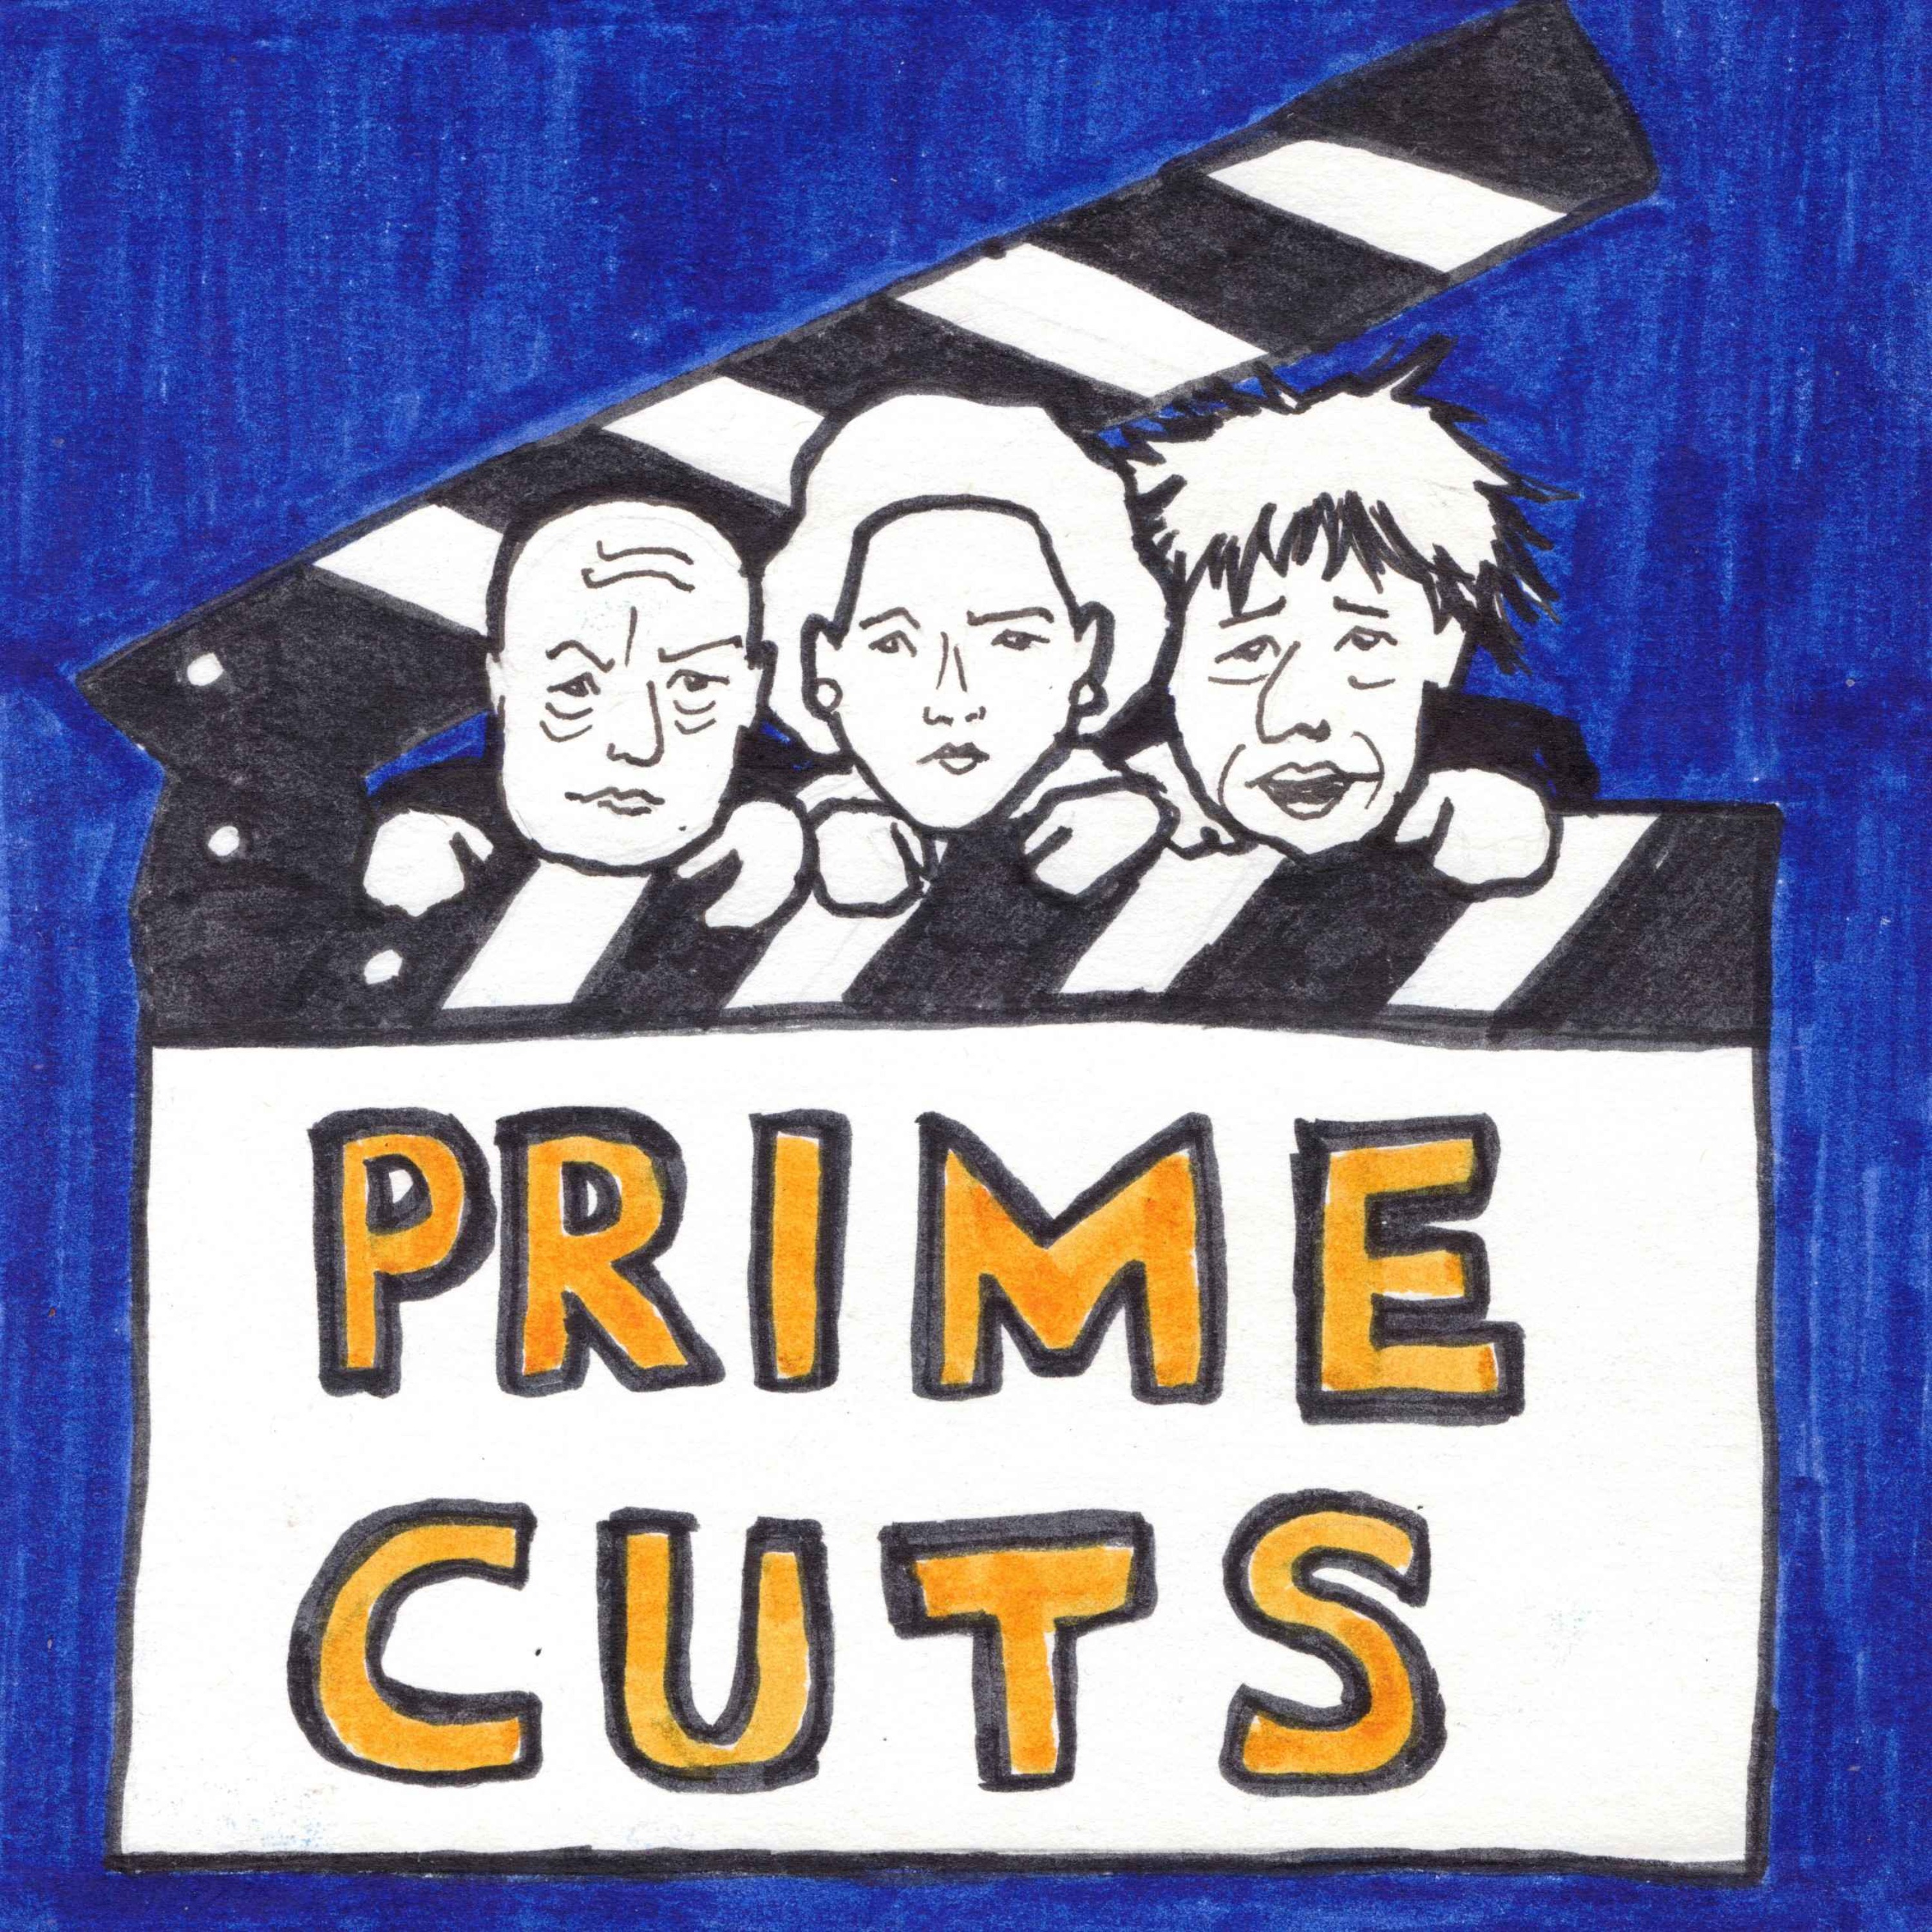 Prime Cuts: Scoring!